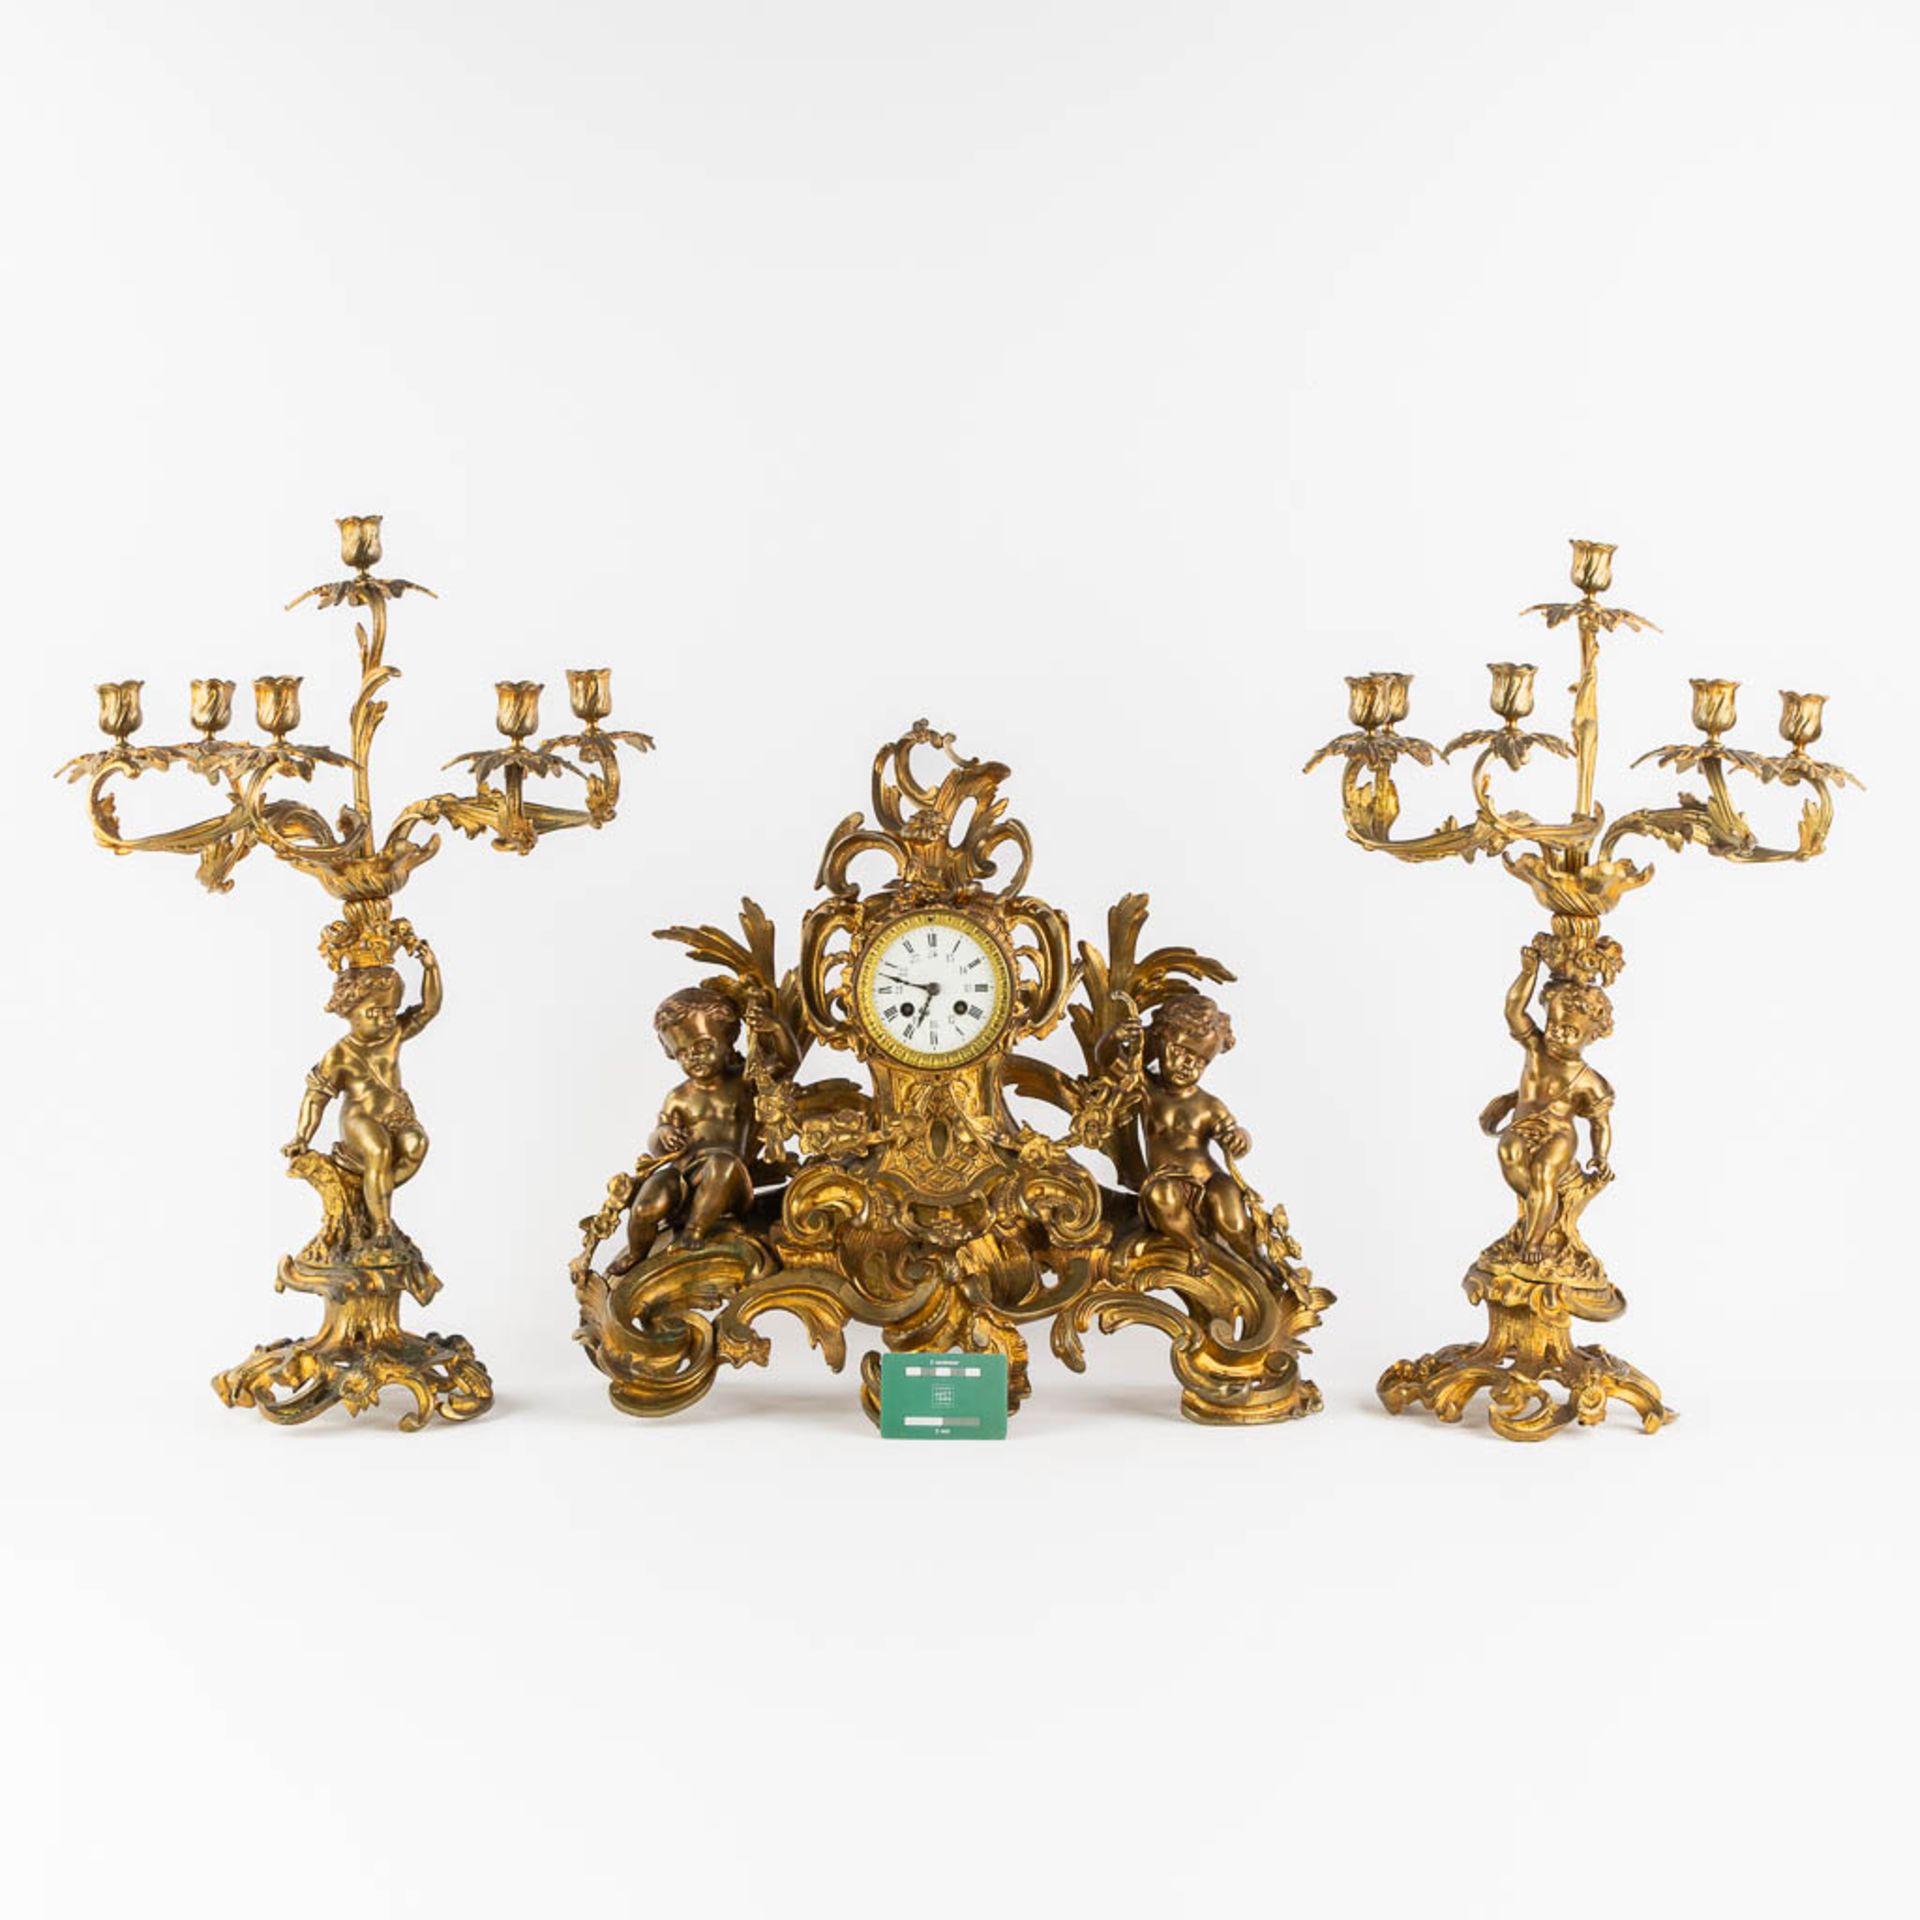 A three-piece mantle garniture clock and candelabra, gilt bronze. 19th C. (L:21 x W:55 x H:48 cm) - Bild 2 aus 16